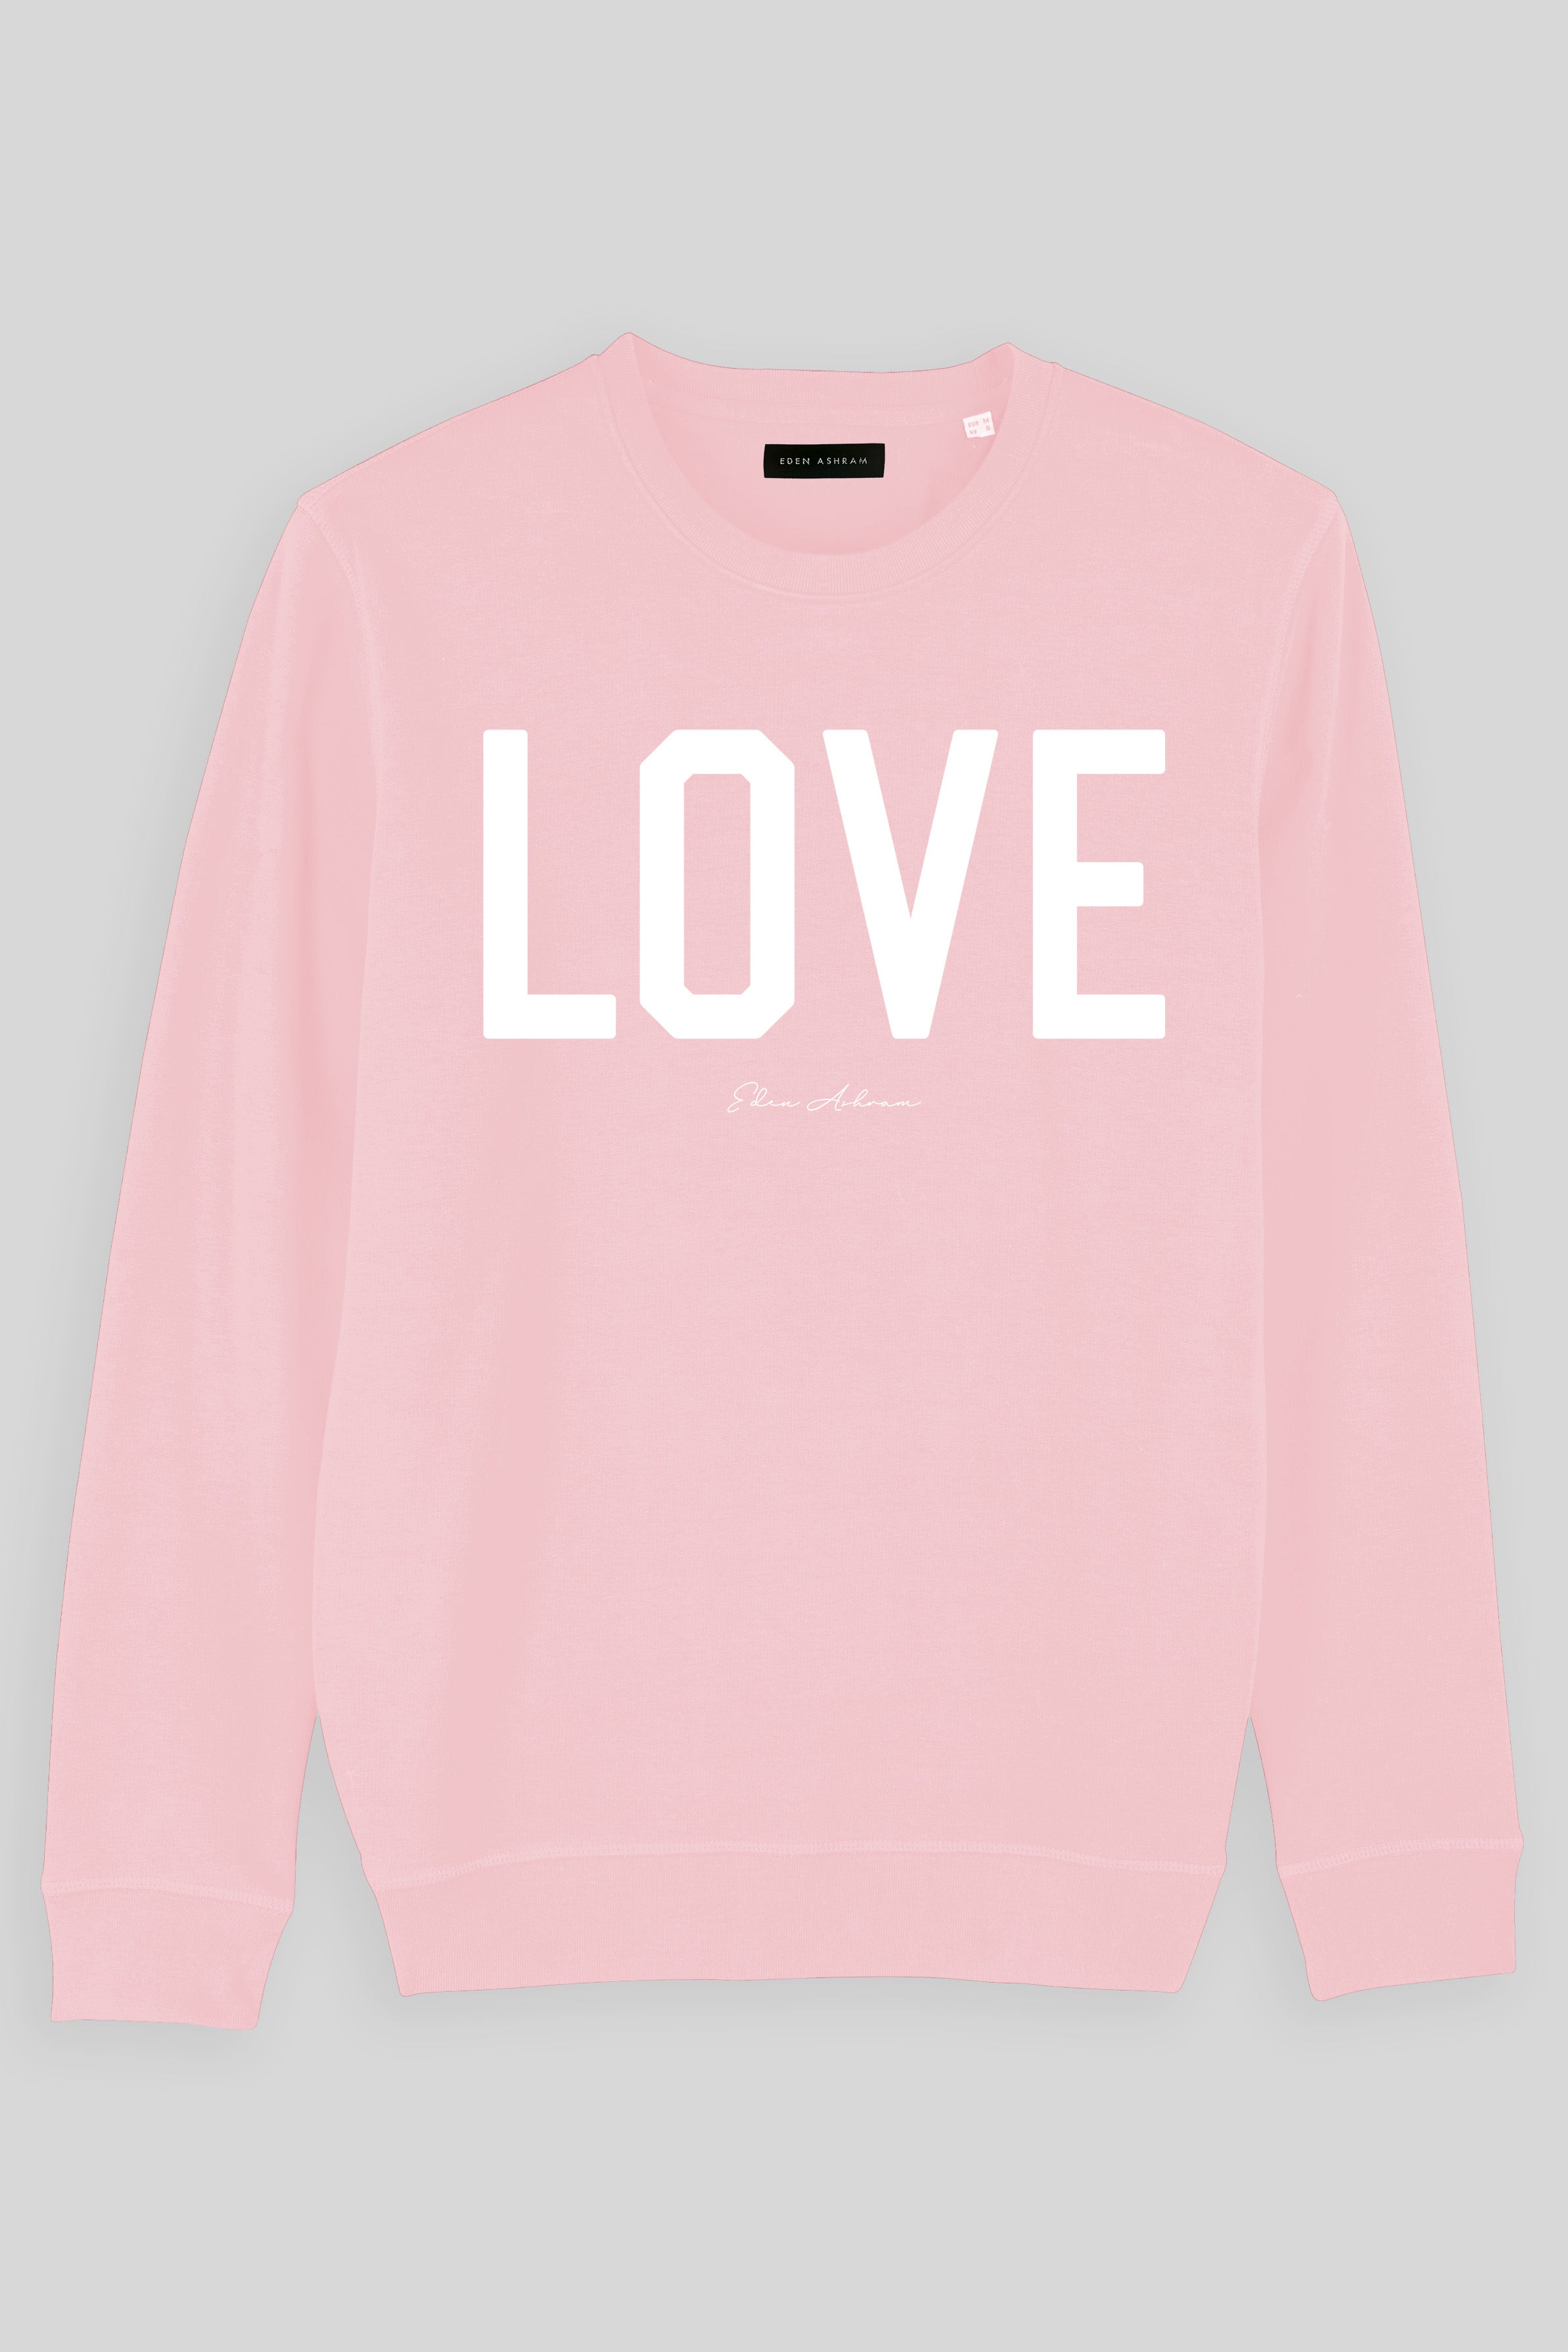 EDEN ASHRAM Love Premium Crew Neck Sweatshirt Cotton Pink